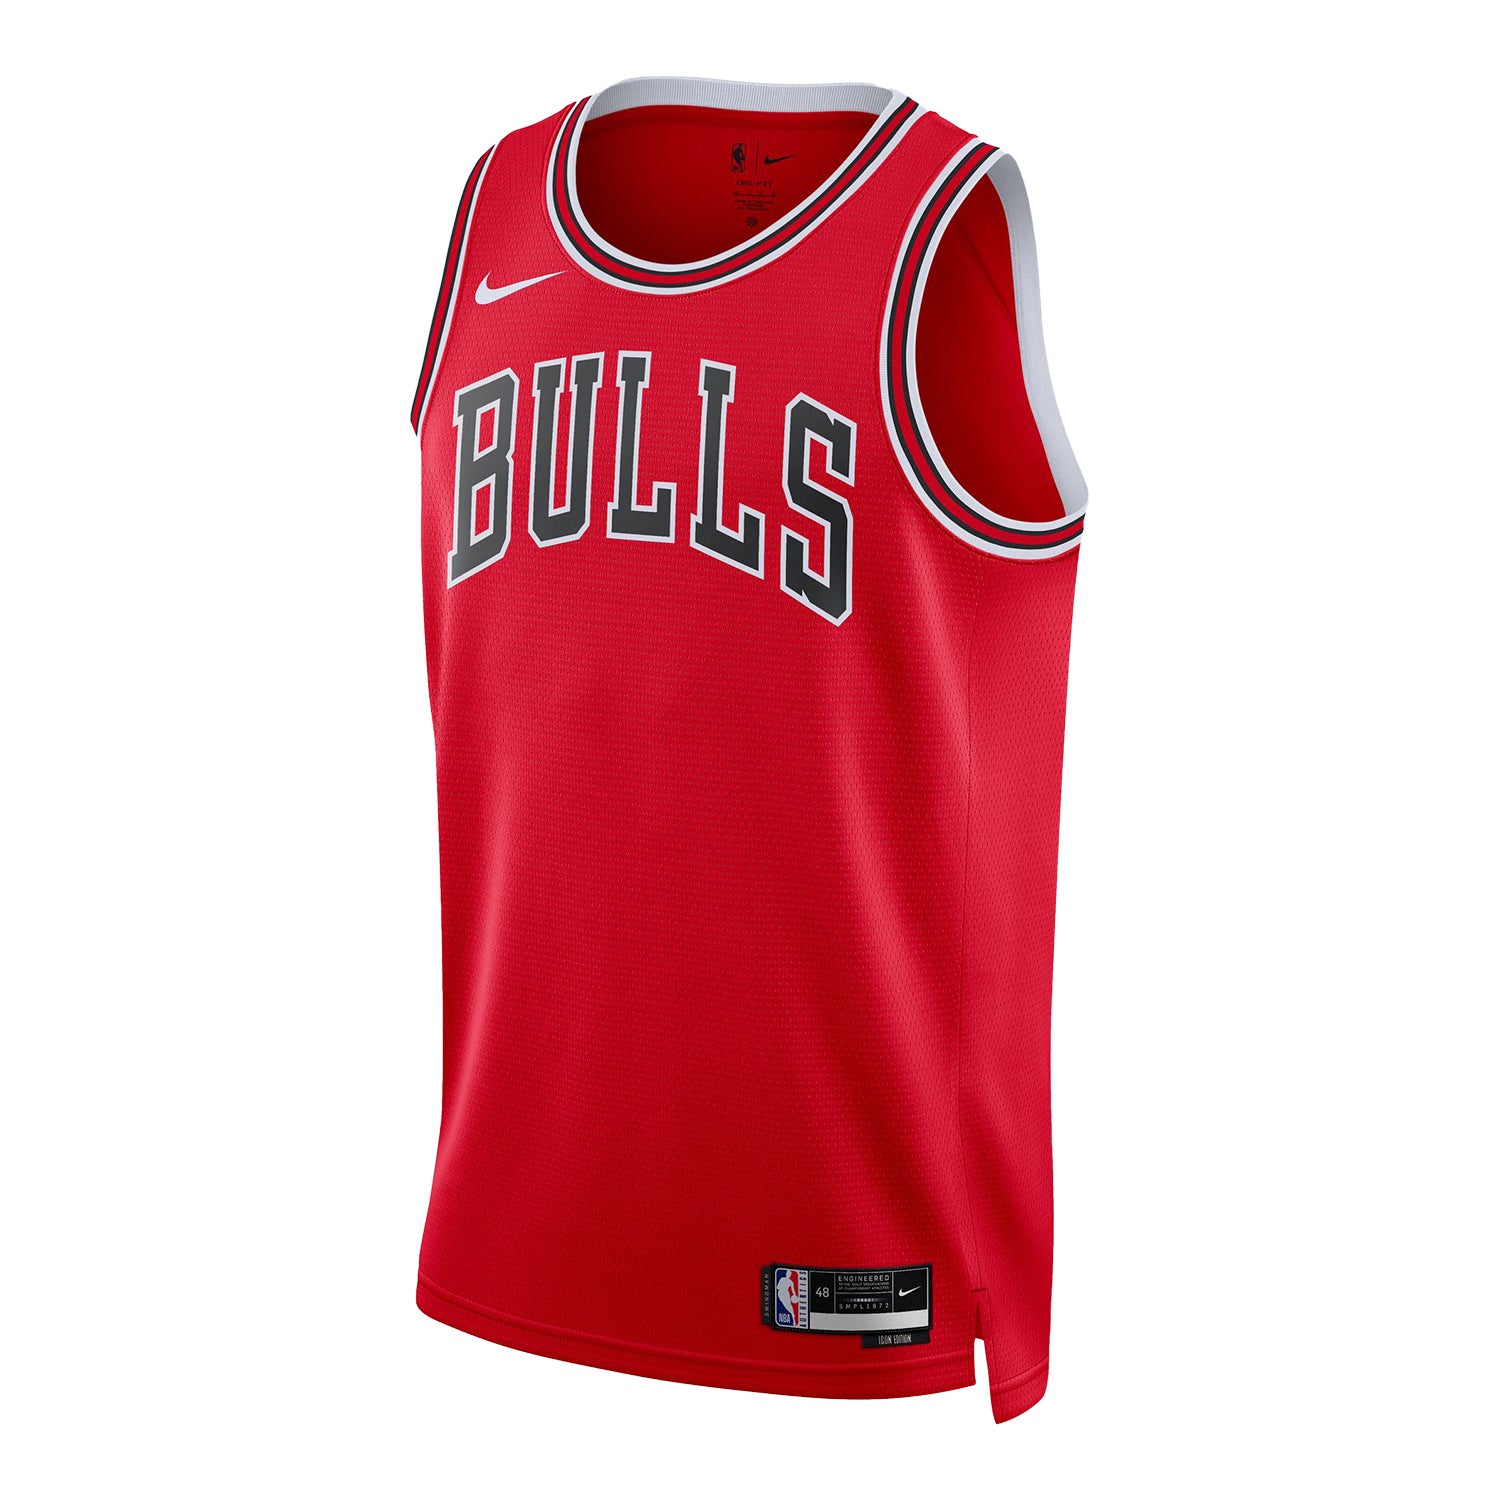 Custom Customized Bulls Jerseys 23 Michael Jordan Basektball